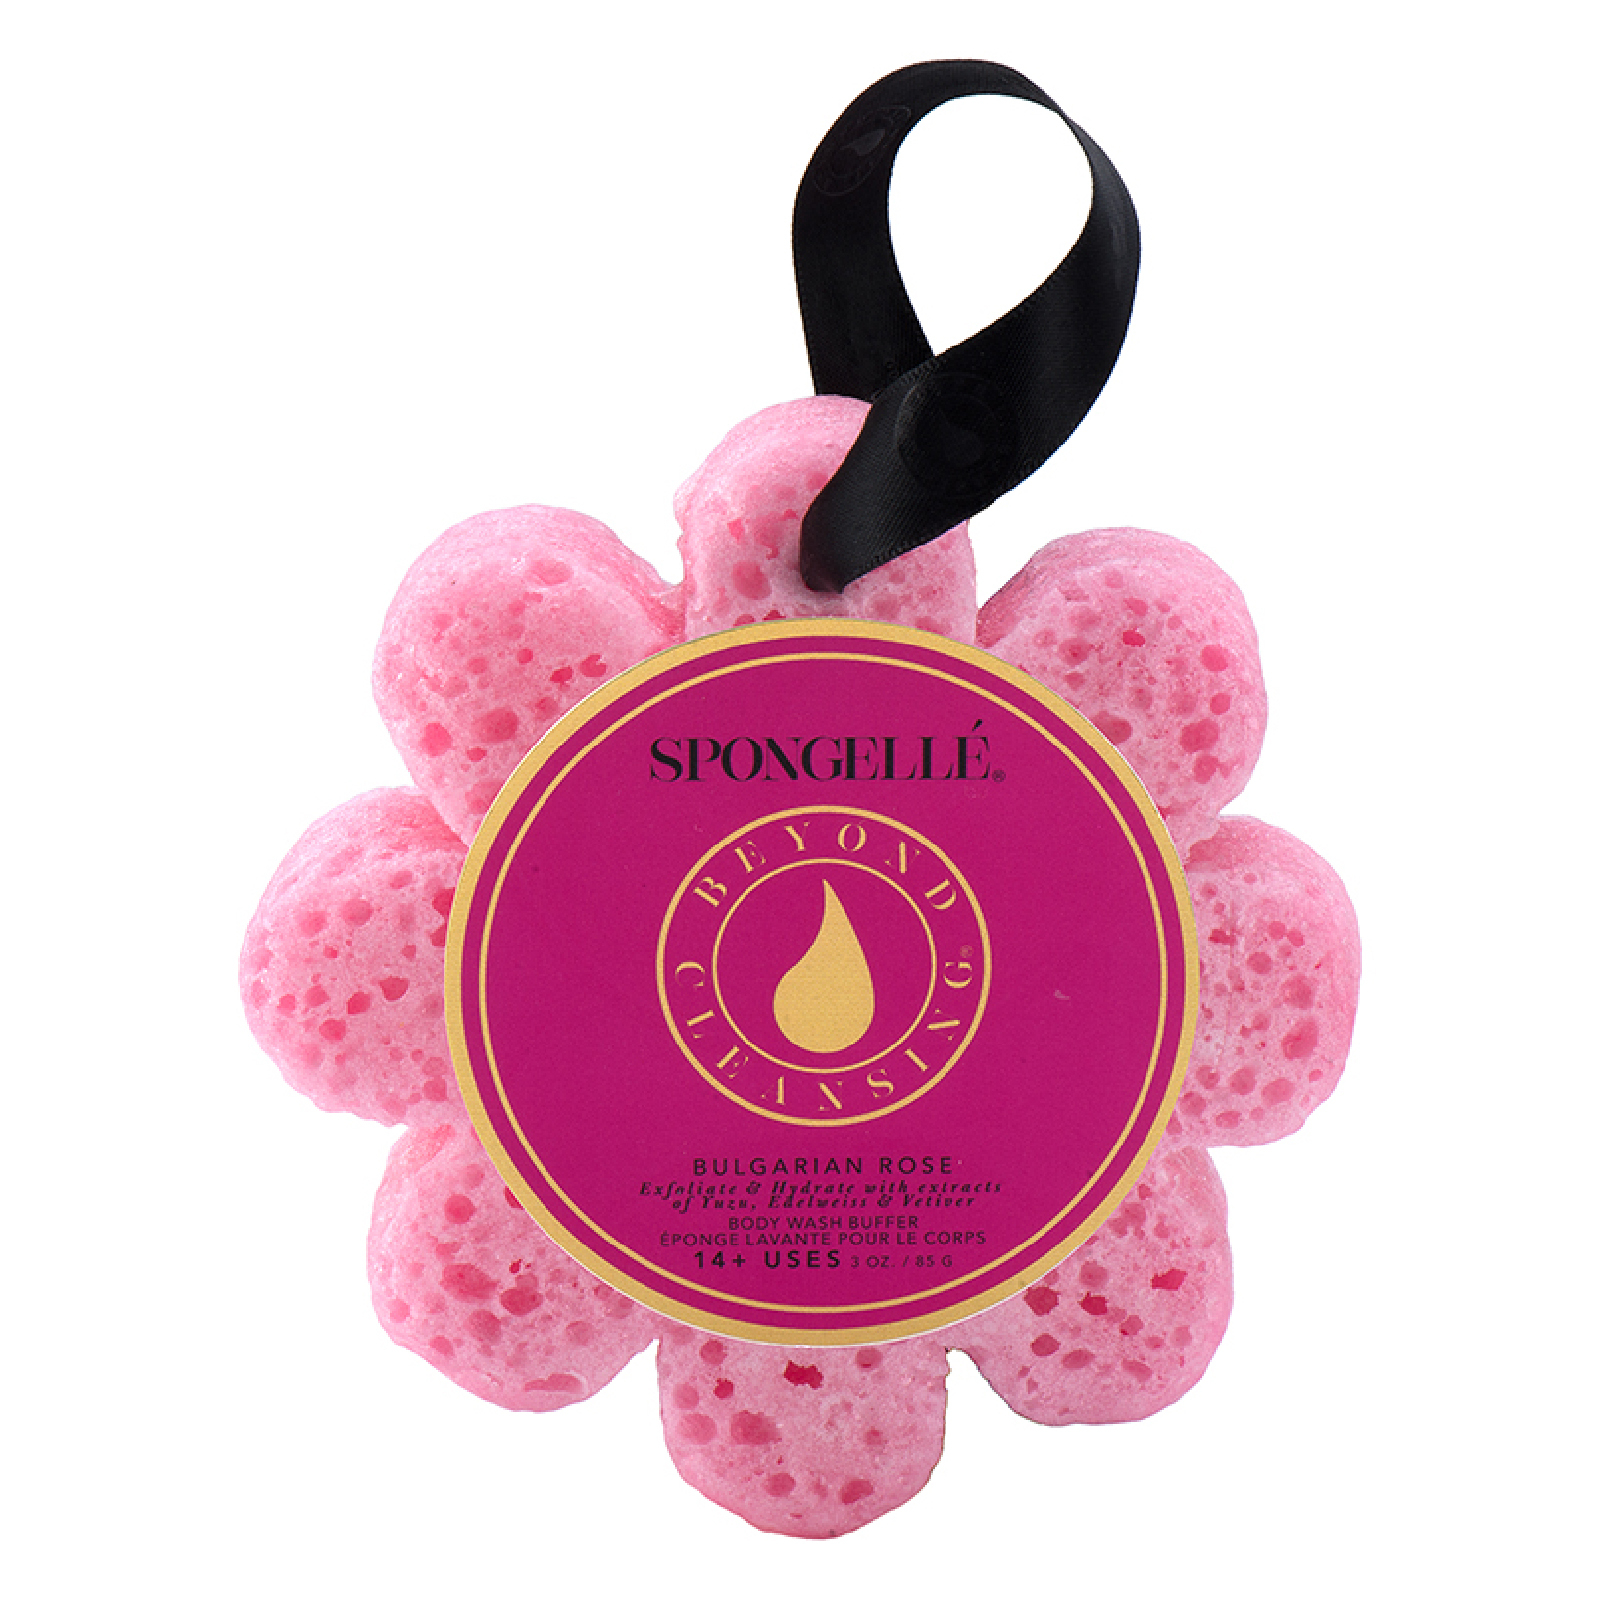 Esponja con jabón corporal perfumado en forma de flor de Spongellé - Rosa búlgara